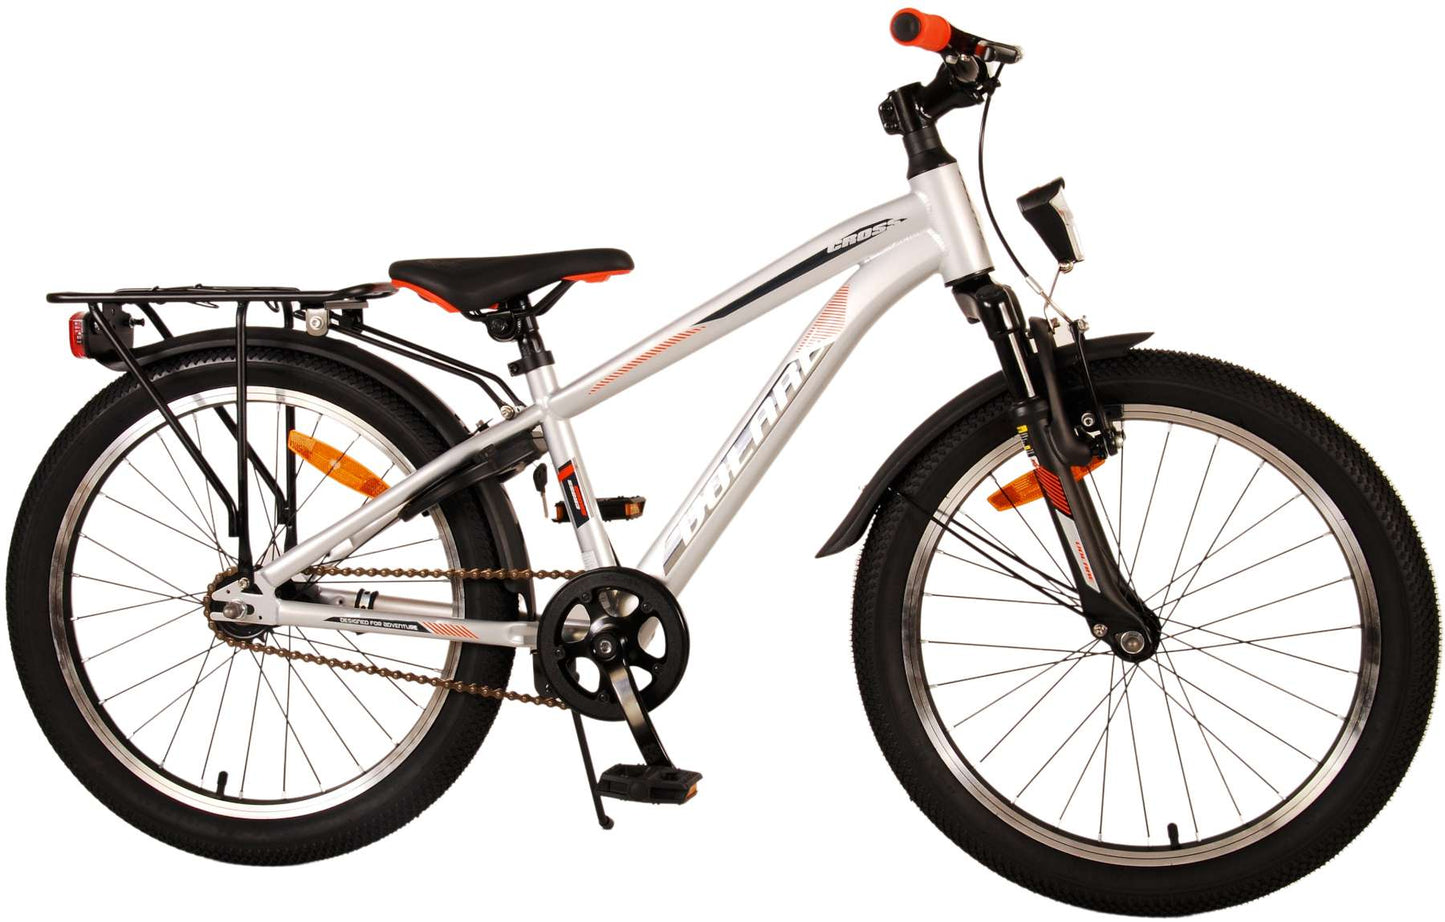 Bicycle per bambini Vlatare Cross - Boys - 20 pollici - argento